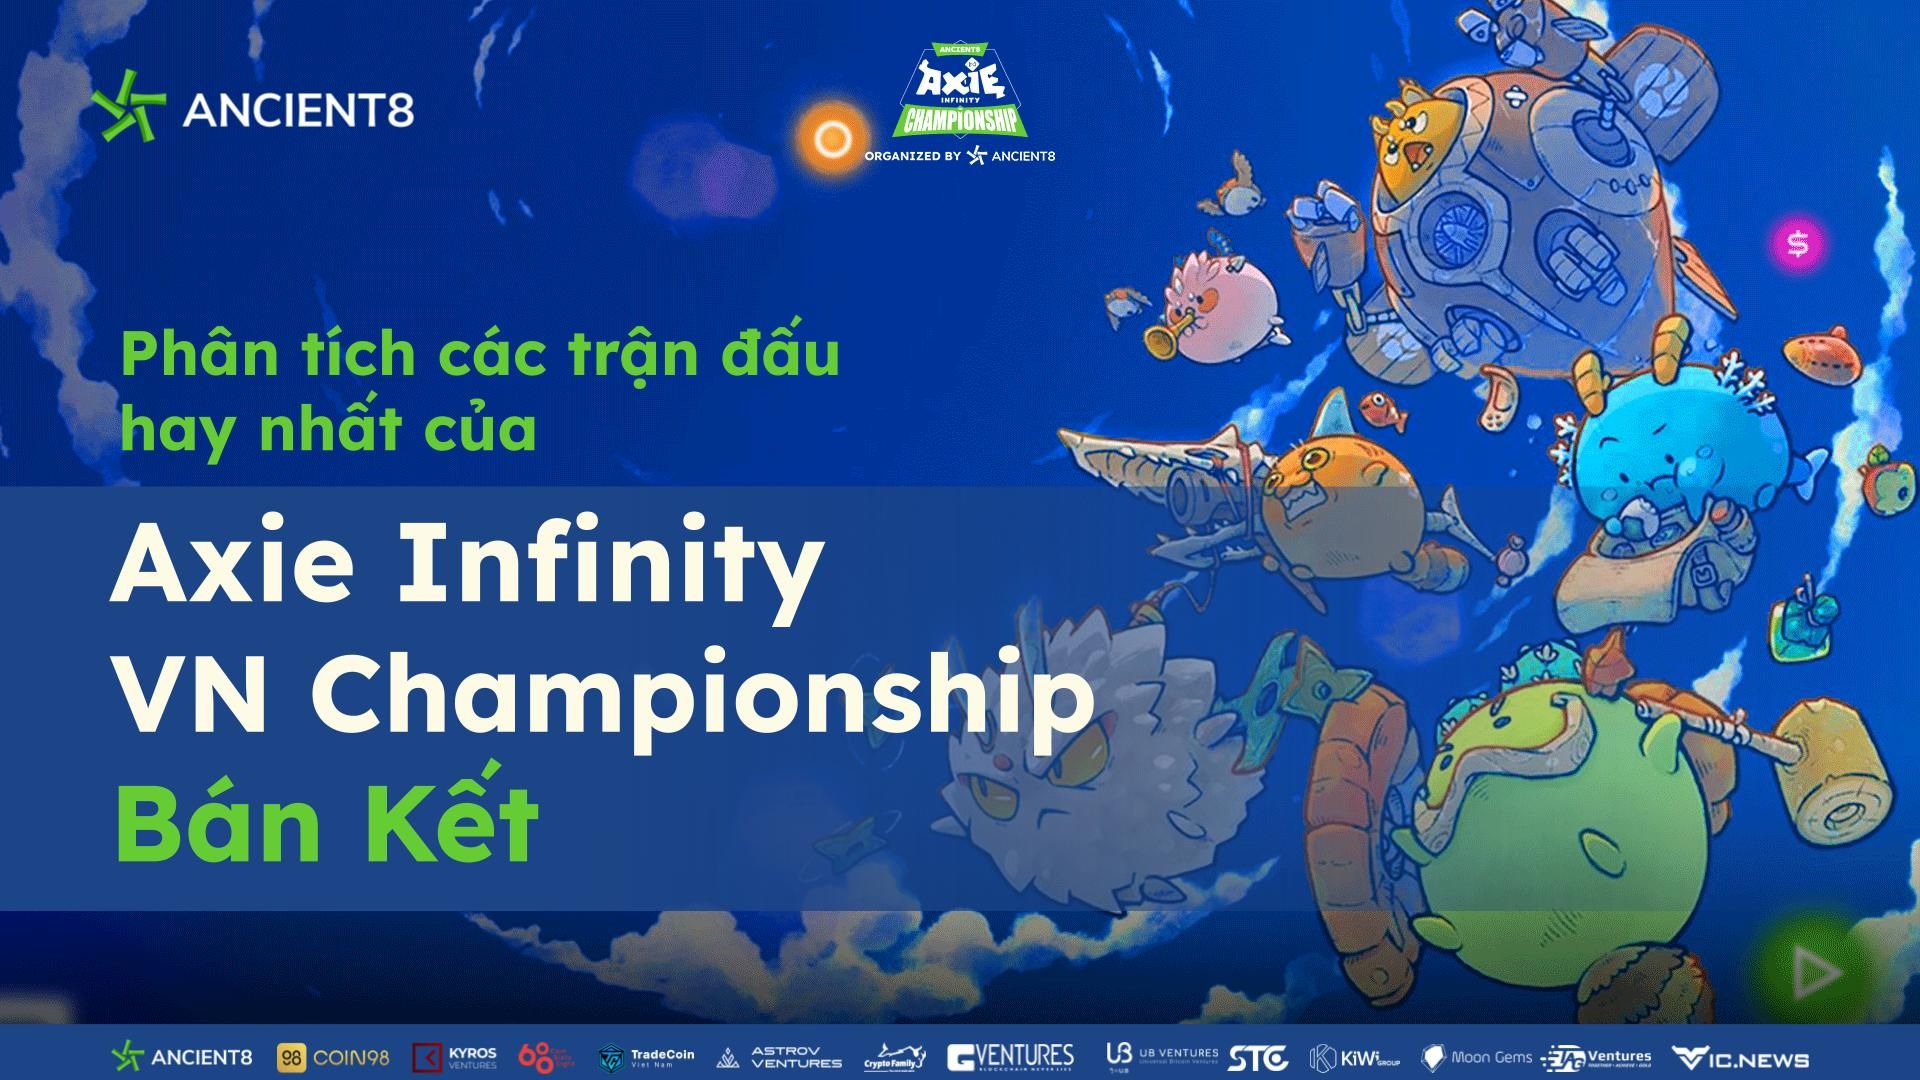 Phân tích các trận đấu hay nhất của Axie Infinity VN Championship - Bán kết